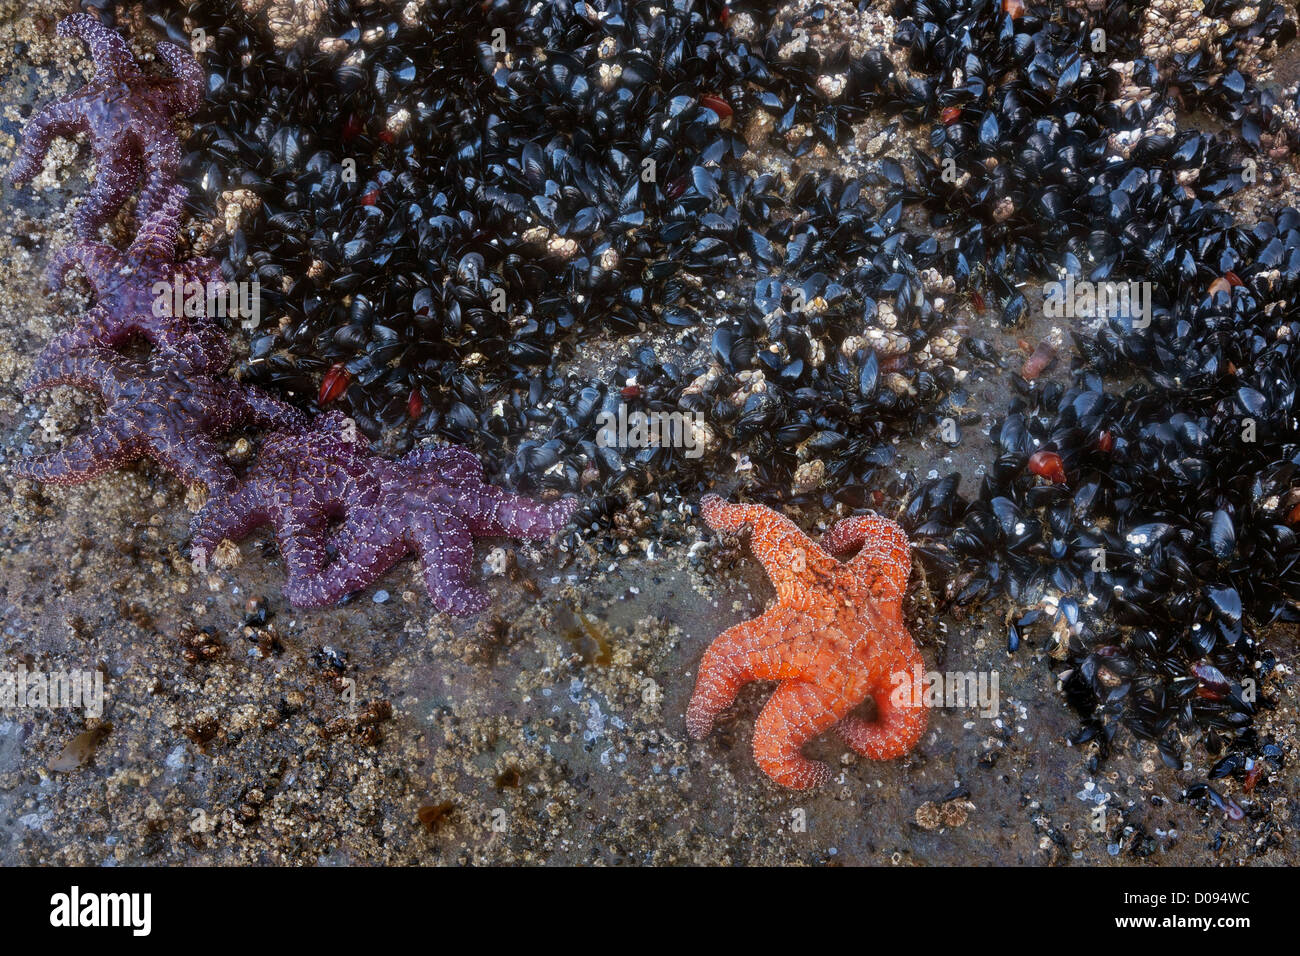 WASHINGTON - Les moules et l'ocre des étoiles de mer sur la plage de rochers exposés 4 à marée basse dans la zone intertidale. Banque D'Images